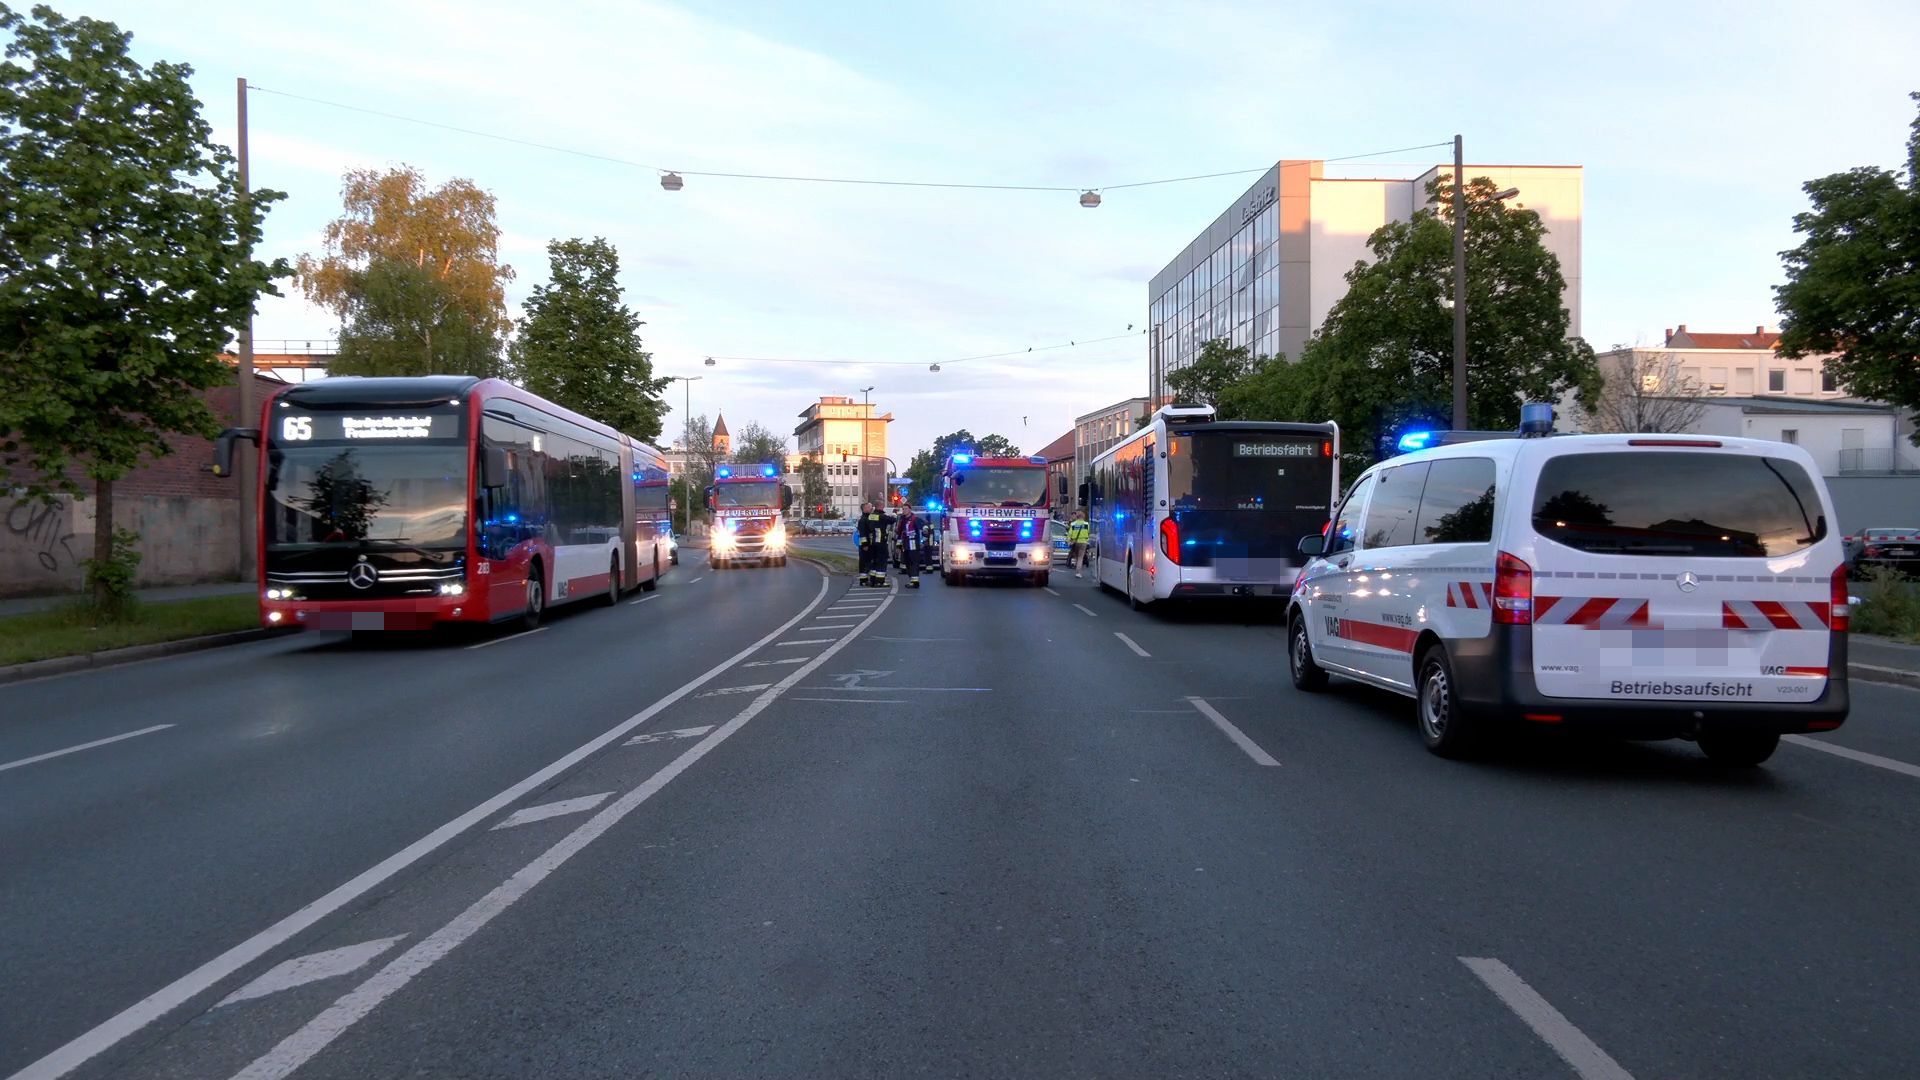 Tödlicher Biker-Unfall im Nürnberger Süden: Motorradfahrer prallt gegen VAG-Bus